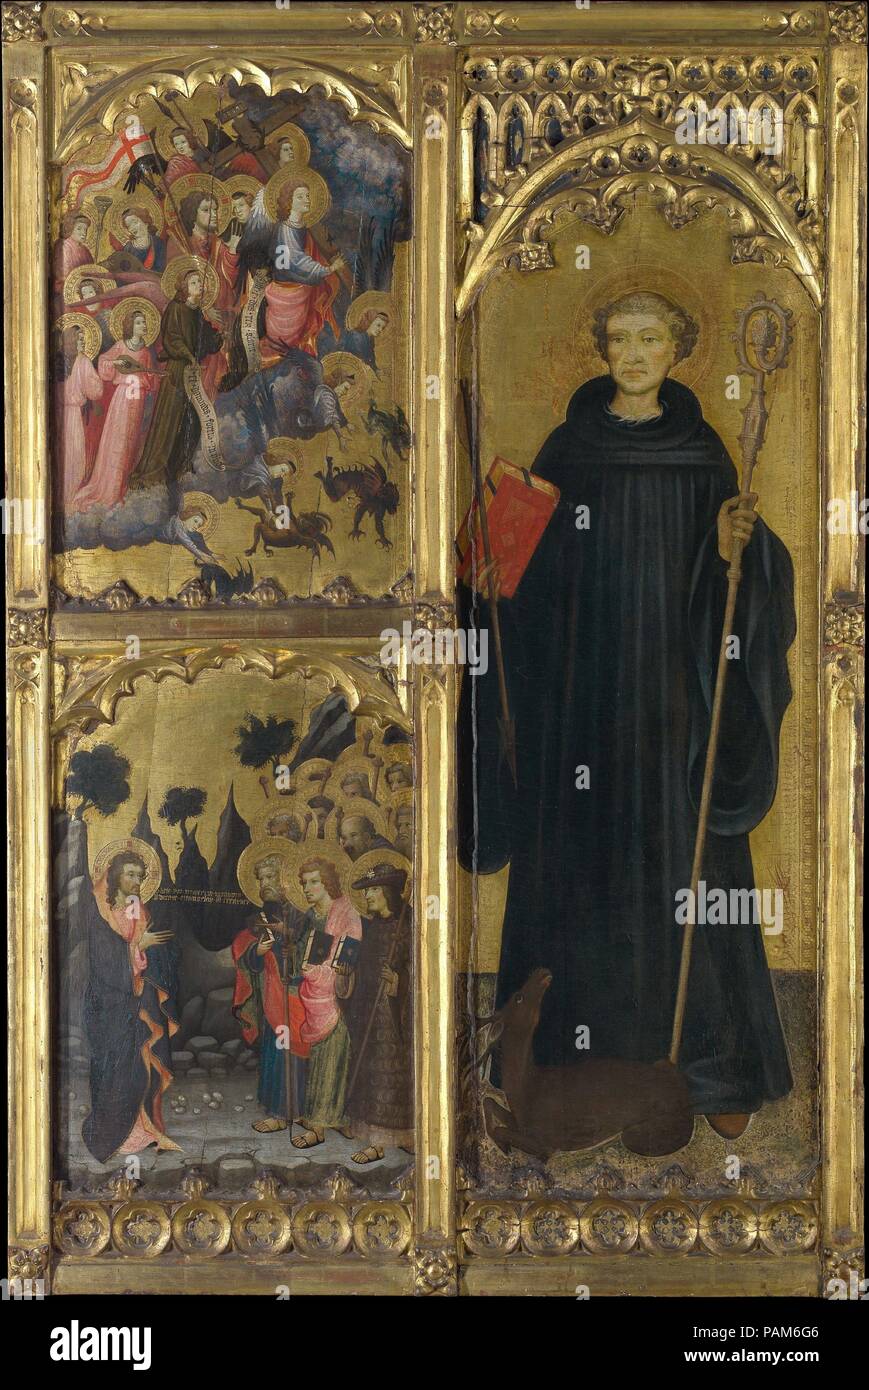 Saint Giles mit Christus Triumphierend über Satan und die Sendung der Apostel. Artist: Miguel Alcañiz (oder Miquel Alcanyís) (Spanisch, Valencia, aktiv von 1408 - starb nach 1447). Abmessungen: Insgesamt 59 5/8 x 39 1/2 in. (151.4 x 100.3 cm); obere linke Klappe, in lackierter Oberfläche 24 1/8 x 16 7/8. (61,3 x 42,9 cm); untere linke Verkleidung, lackiert Oberfläche 24 5/8 x 16 7/8 in. (62,5 x 42,9 cm); rechts, lackierte Oberfläche 46 1/8 x 16 7/8 in. (117,2 x 42,9 cm). Datum: Ca. 1408. Diese Panels, von der ein Altarbild für die VALENZIANISCHEN Kirche San Juan del Hospital, gehören zu den frühesten Werke von Miguel Alcañiz, ein Stockfoto